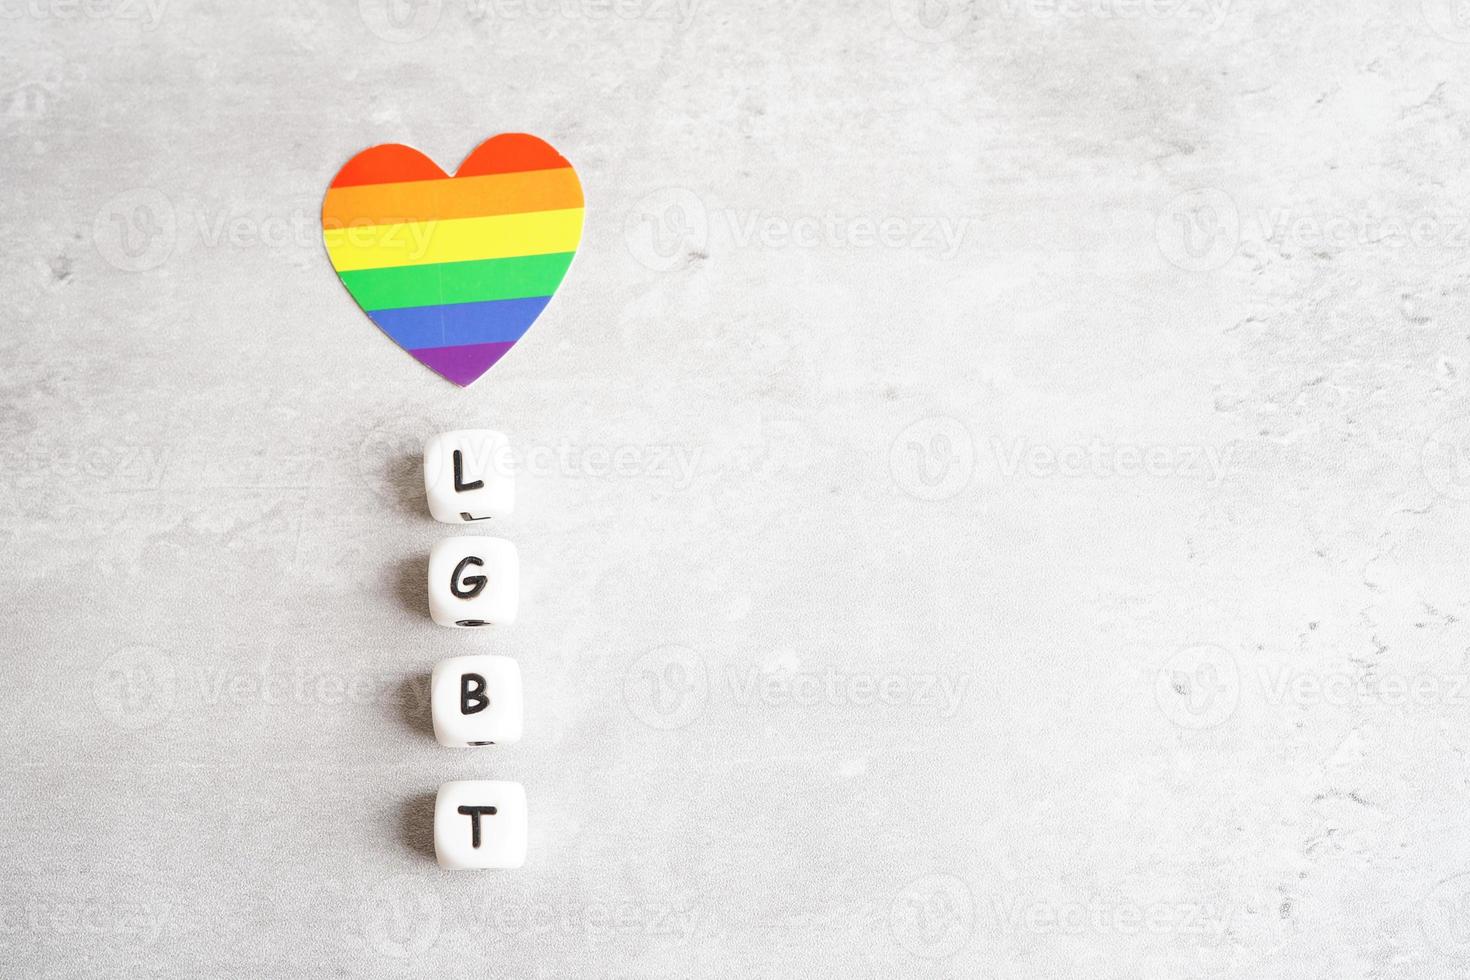 lgbt-textcharakter mit regenbogenflaggenherz für symbol des stolzmonats lesbisch, schwul, bisexuell, transgender, menschenrechte, toleranz und frieden. foto